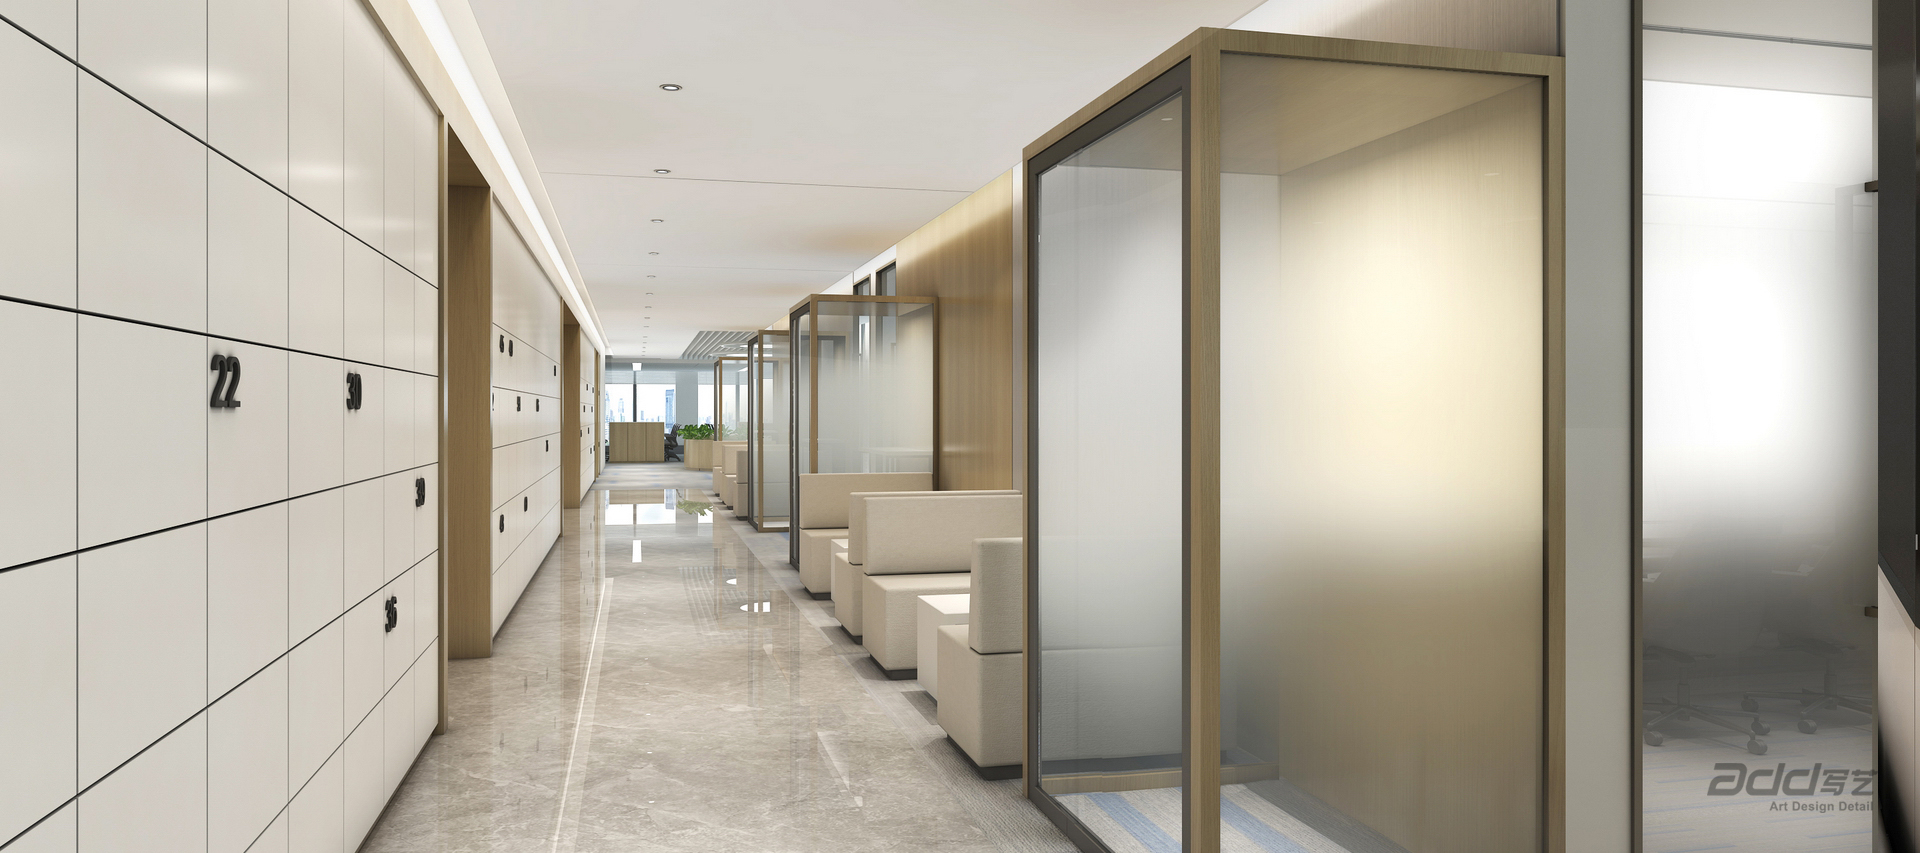 德邦證券辦公室裝修-辦公區走廊-pc